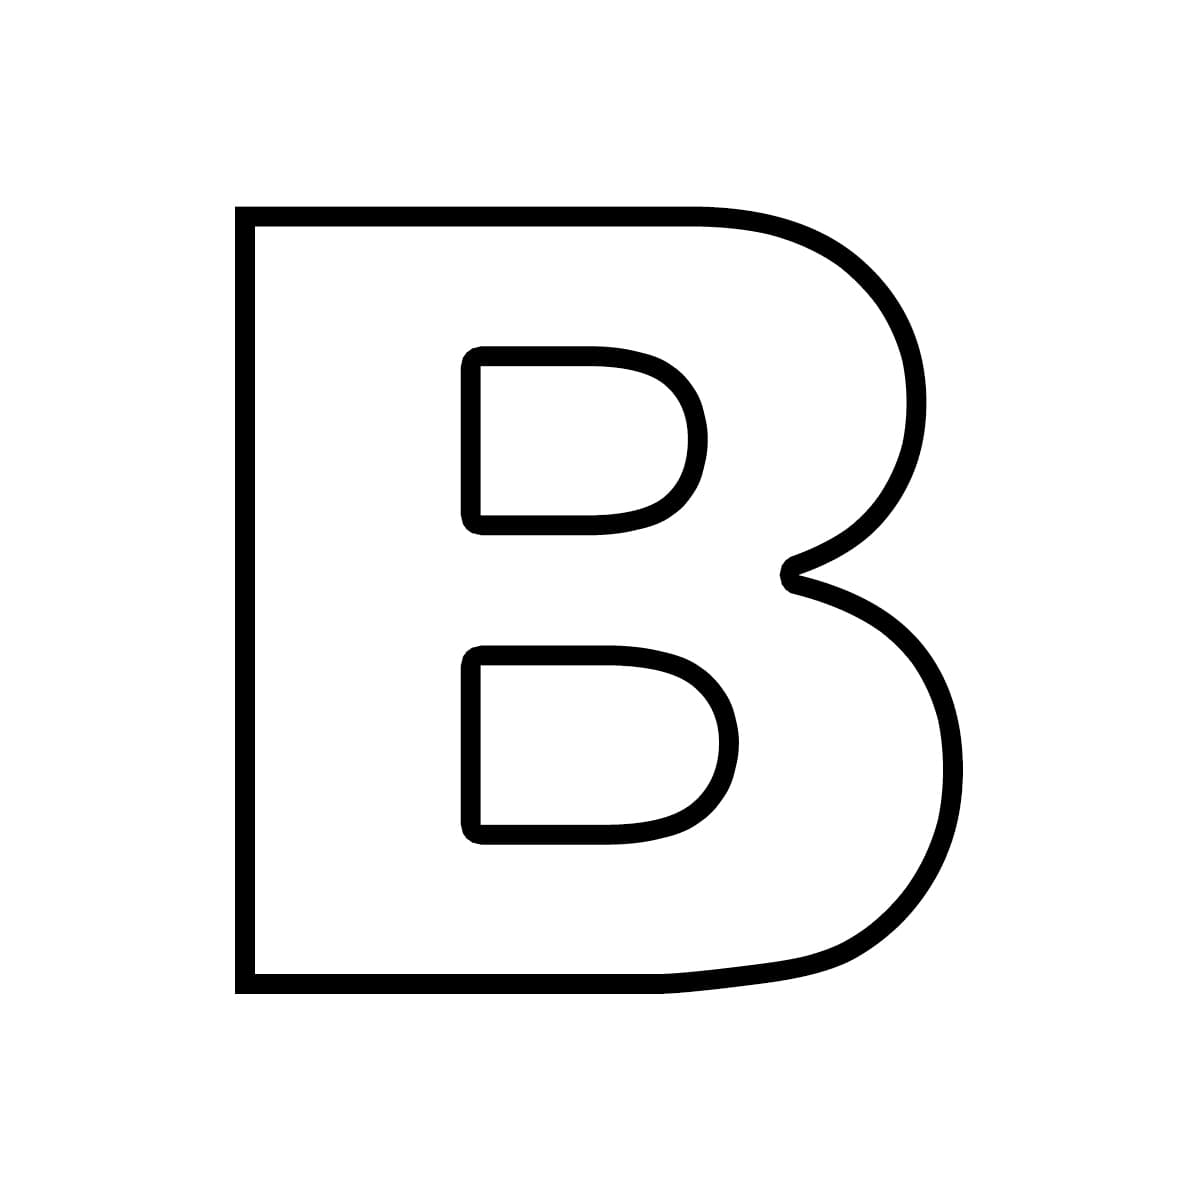 Dibujo de letra B para colorear imprimir - Dibujos colores